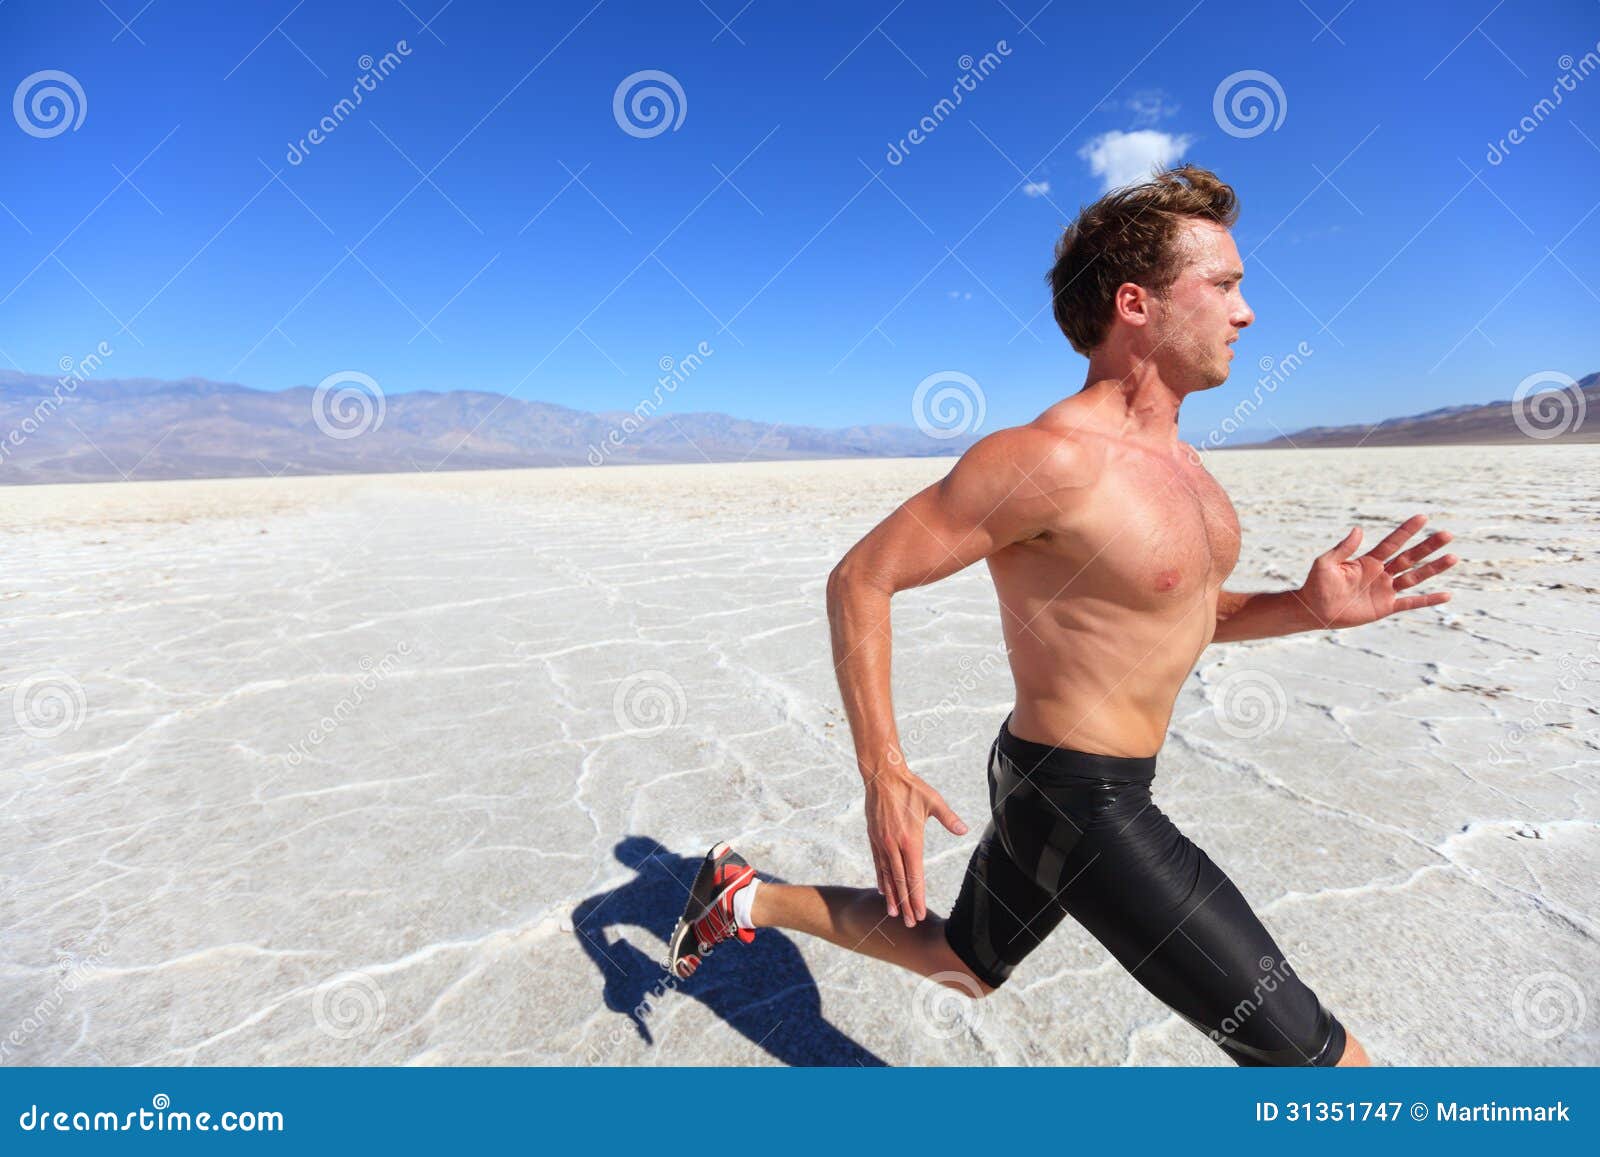 Пустынные бега. Человек спортсмен. Бег по пустыне. Бегут парни в пустыне. Бег под палящим солнцем.